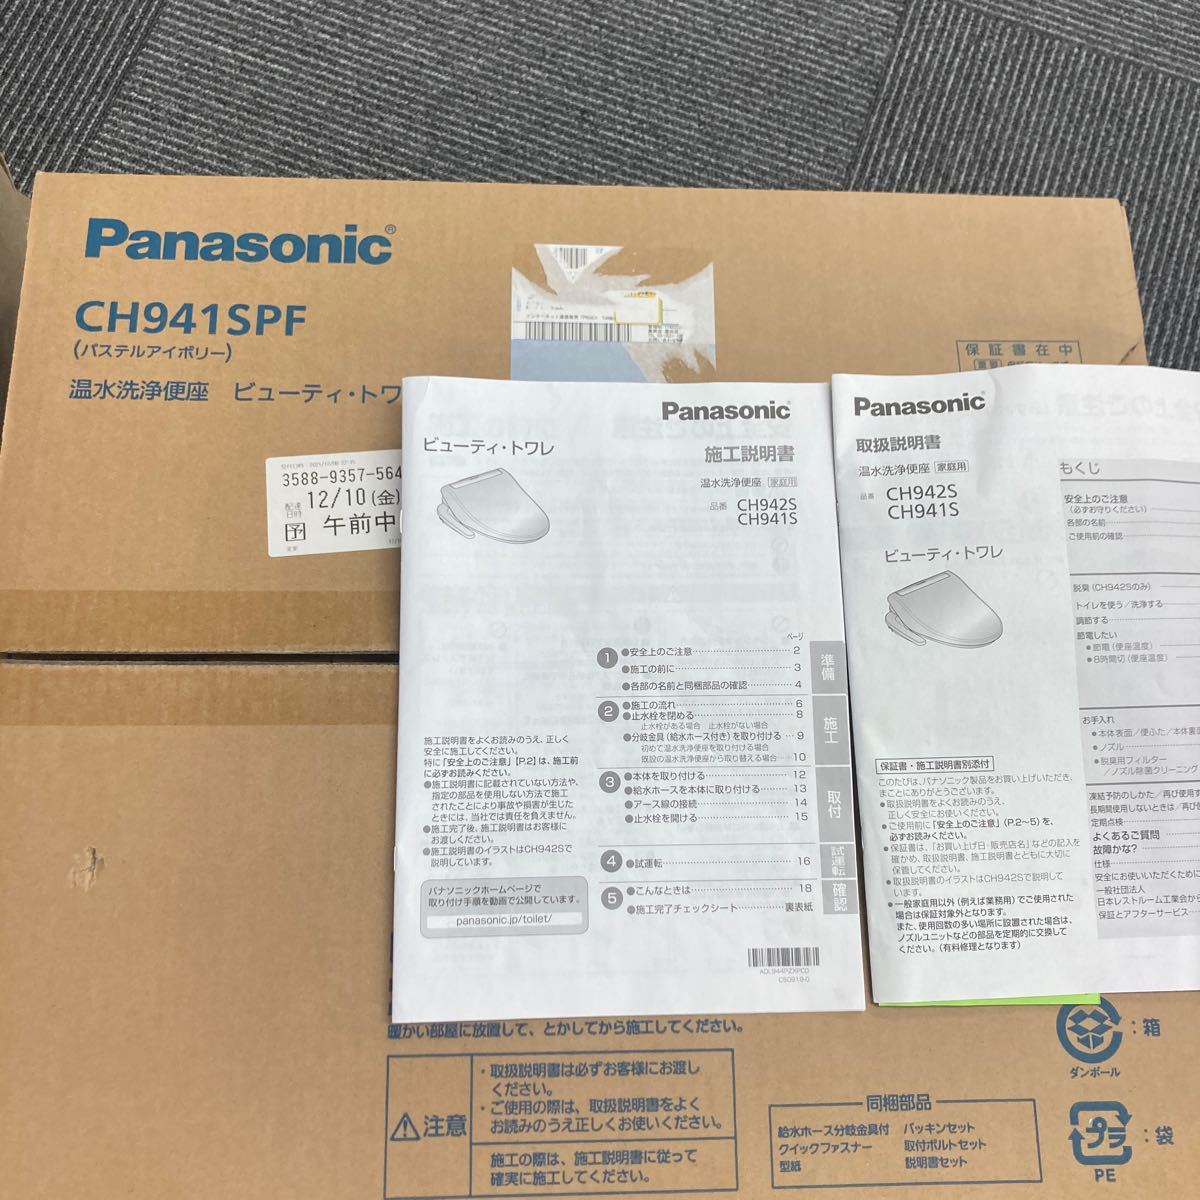 &【新品未使用】Panasonic パナソニック 温水洗浄便座 ビューティトワレ CH941SPF _画像2